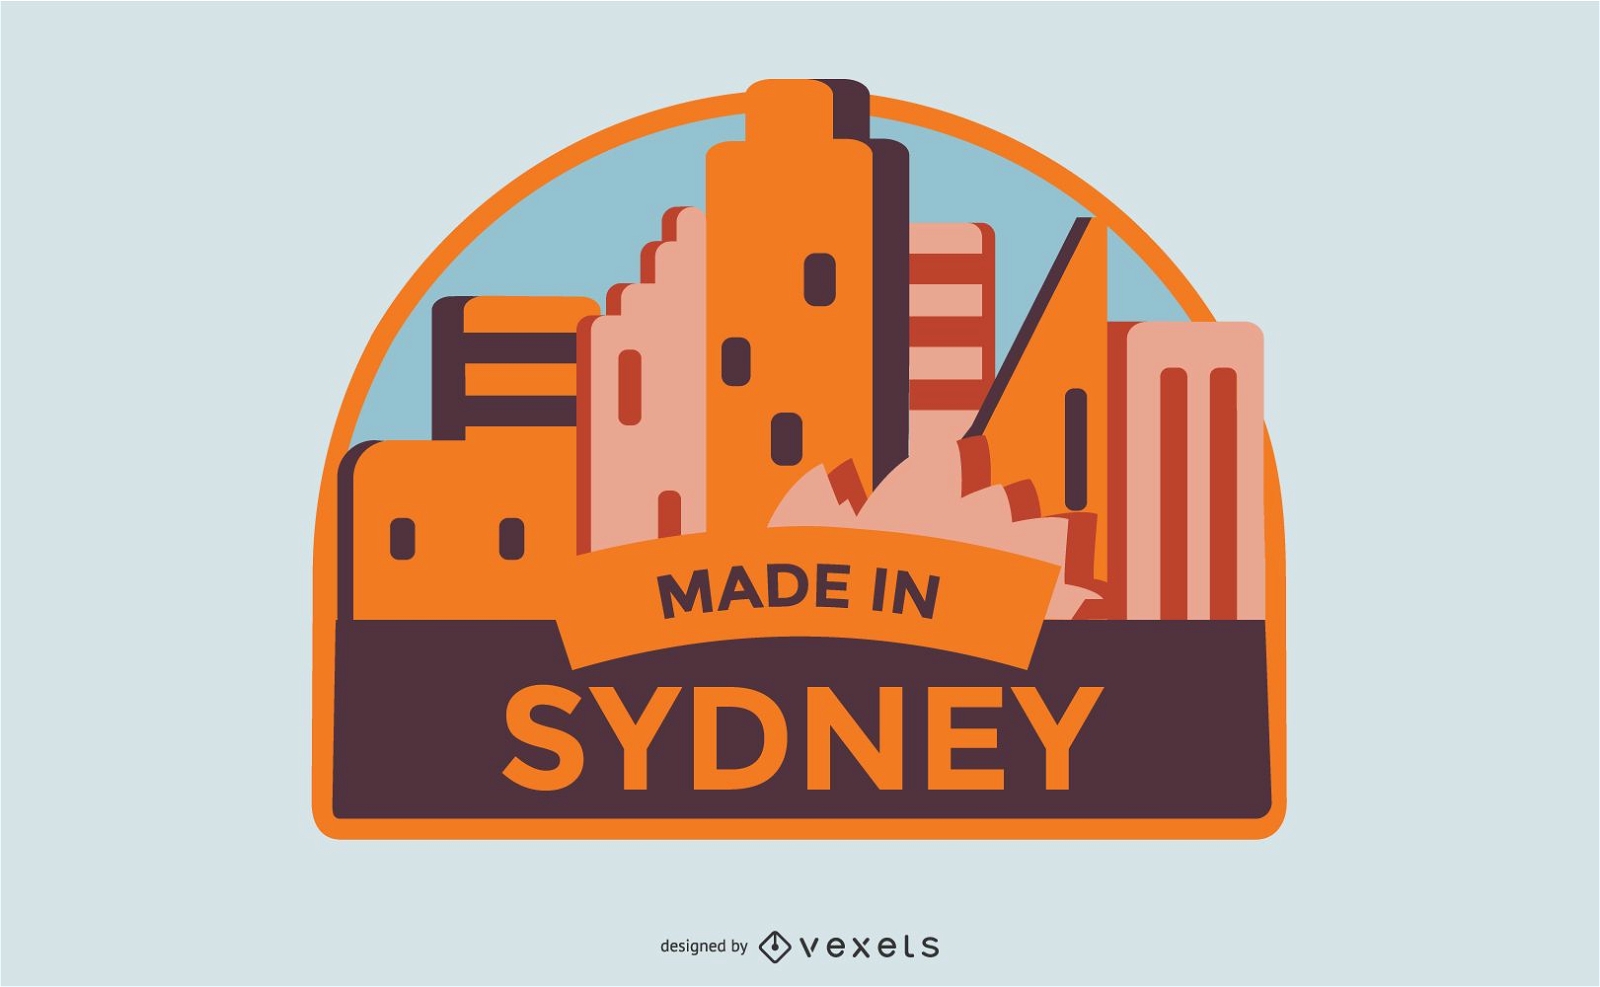 Feito em Sydney Label Design